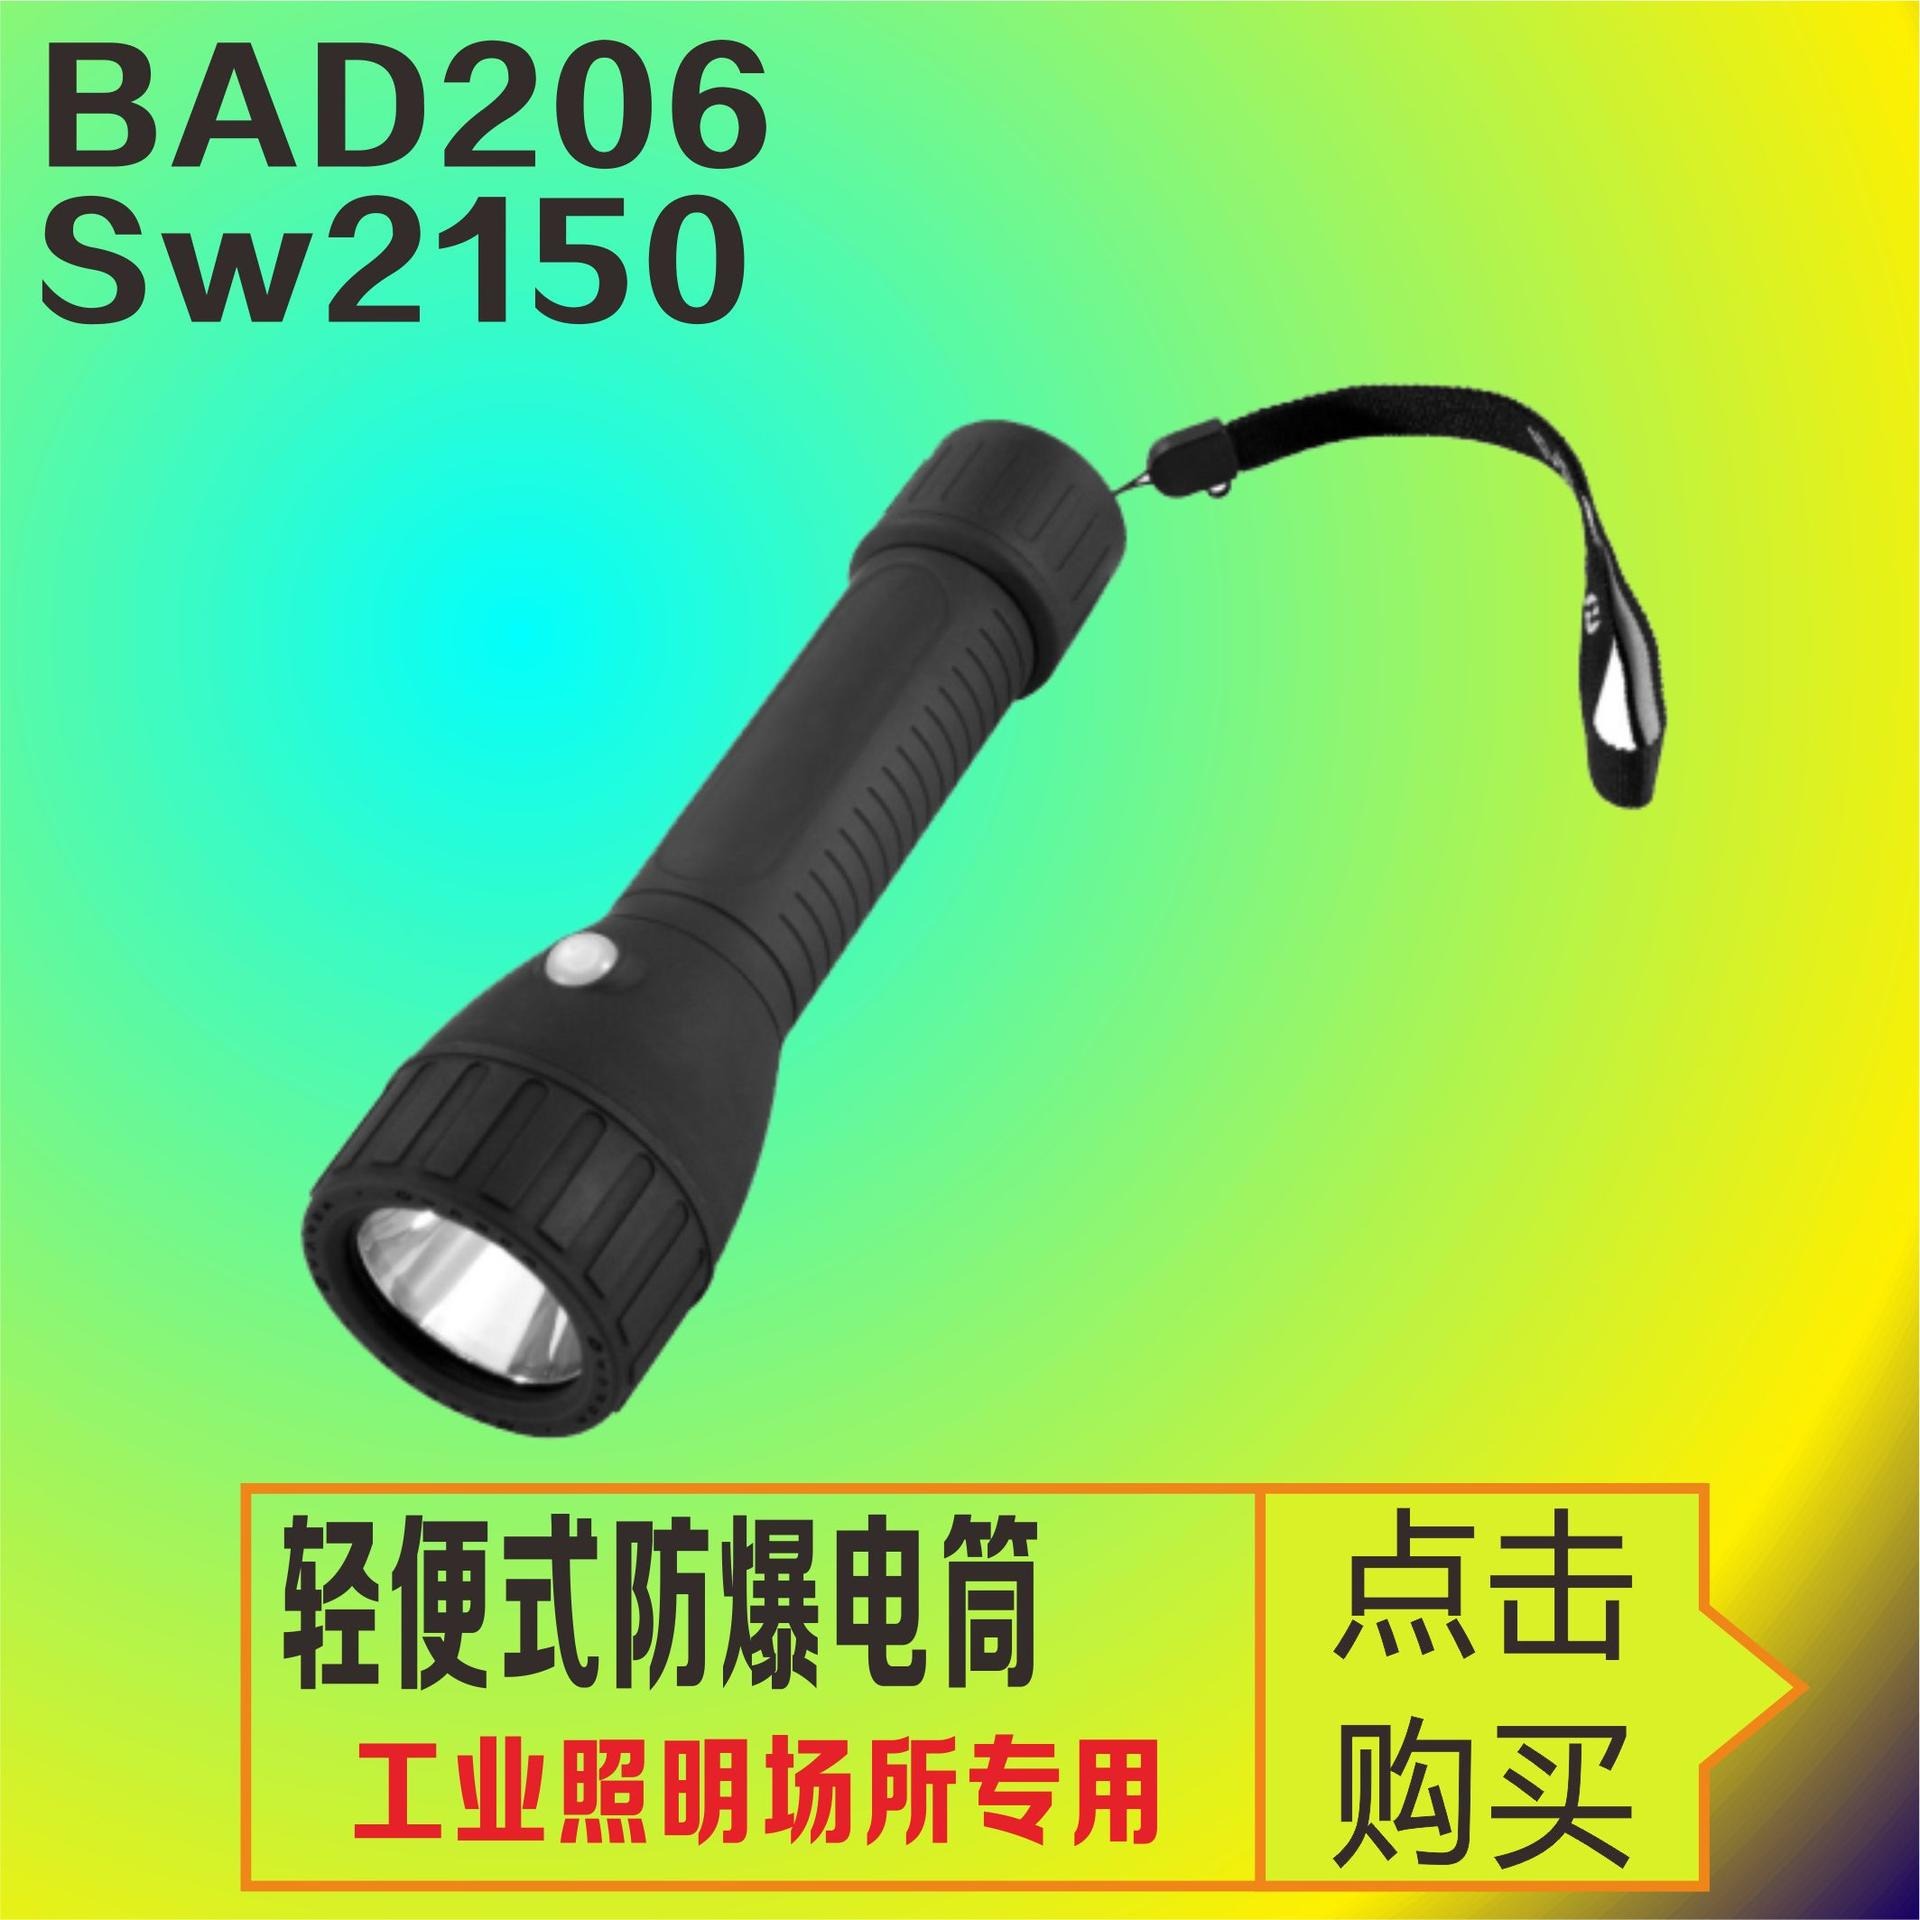 JW7632强光防爆电筒 SW2151便携式探照灯 隔爆本安型工作光强光频闪灯 固态免维护LED灯